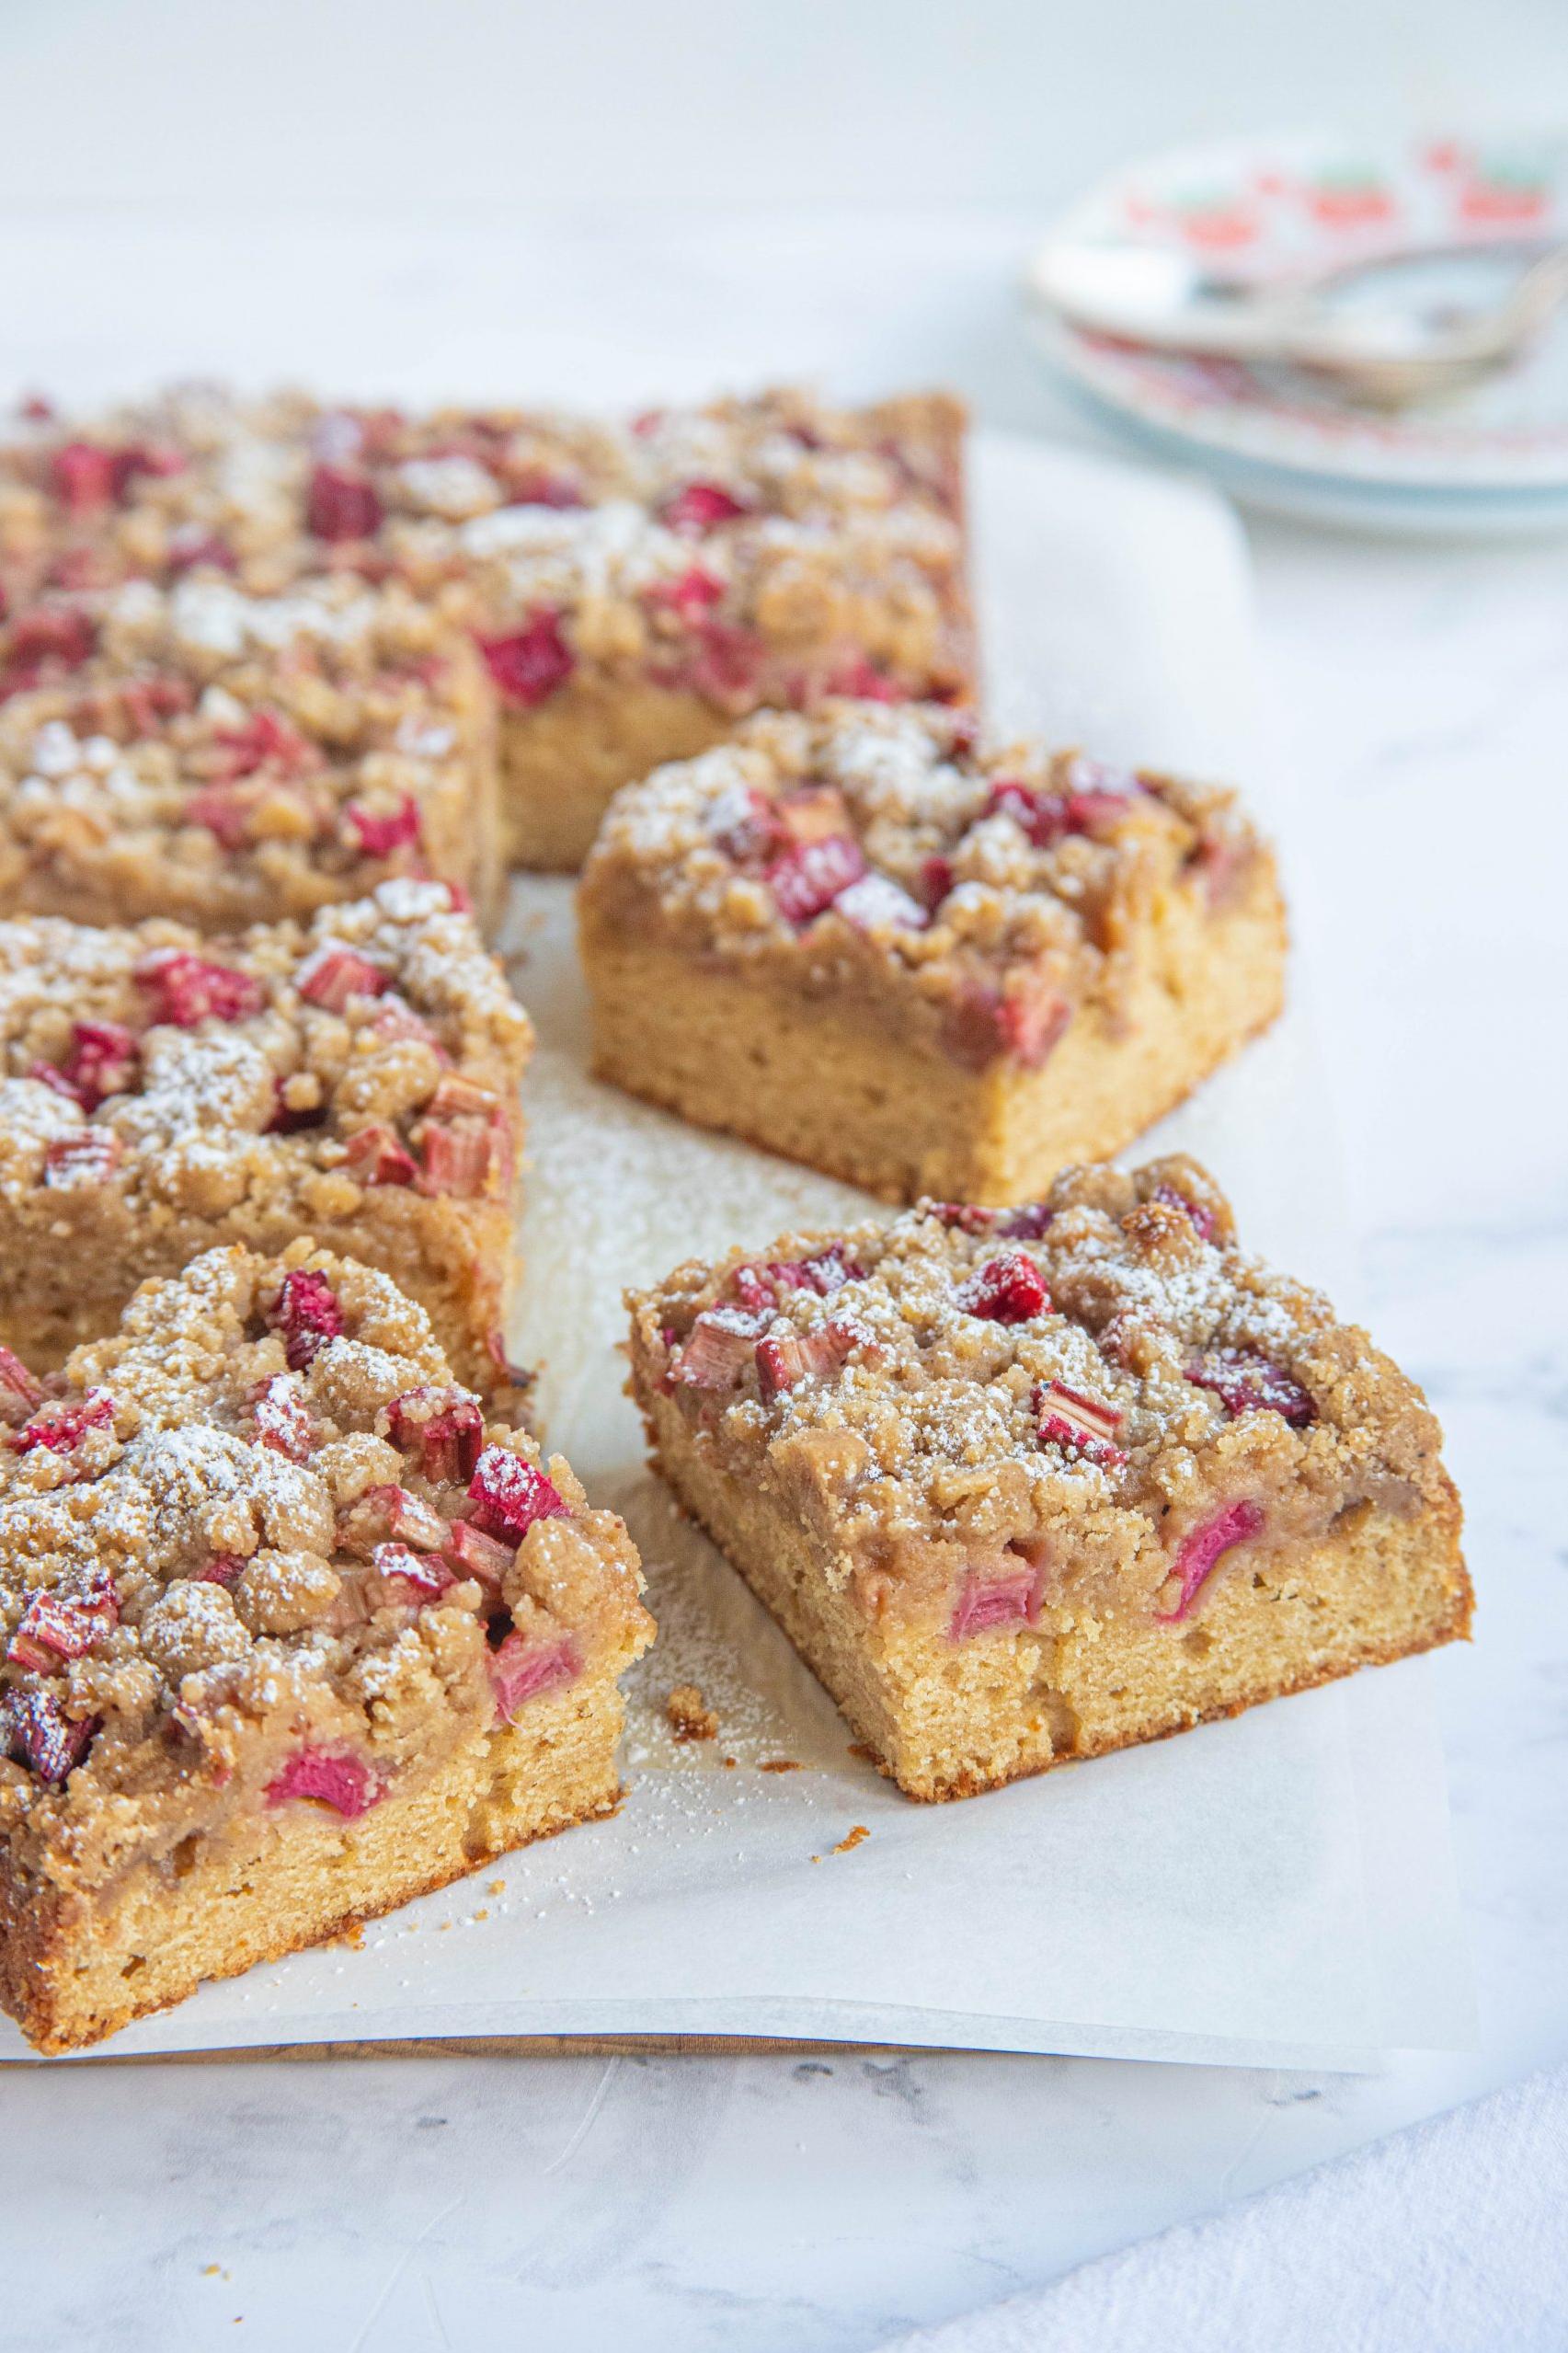 Sweet and Tart Rhubarb Crumb Coffee Cake Recipe